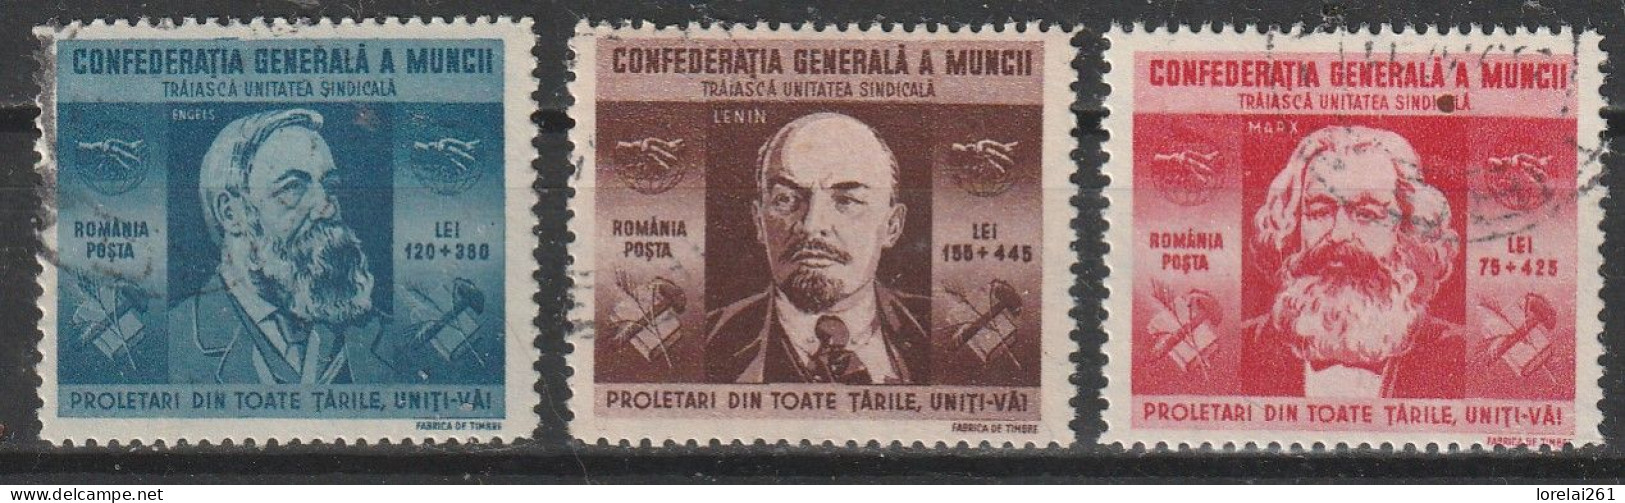 1945 - Confédération Générale Du Travail Mi No 861/863 - Usati